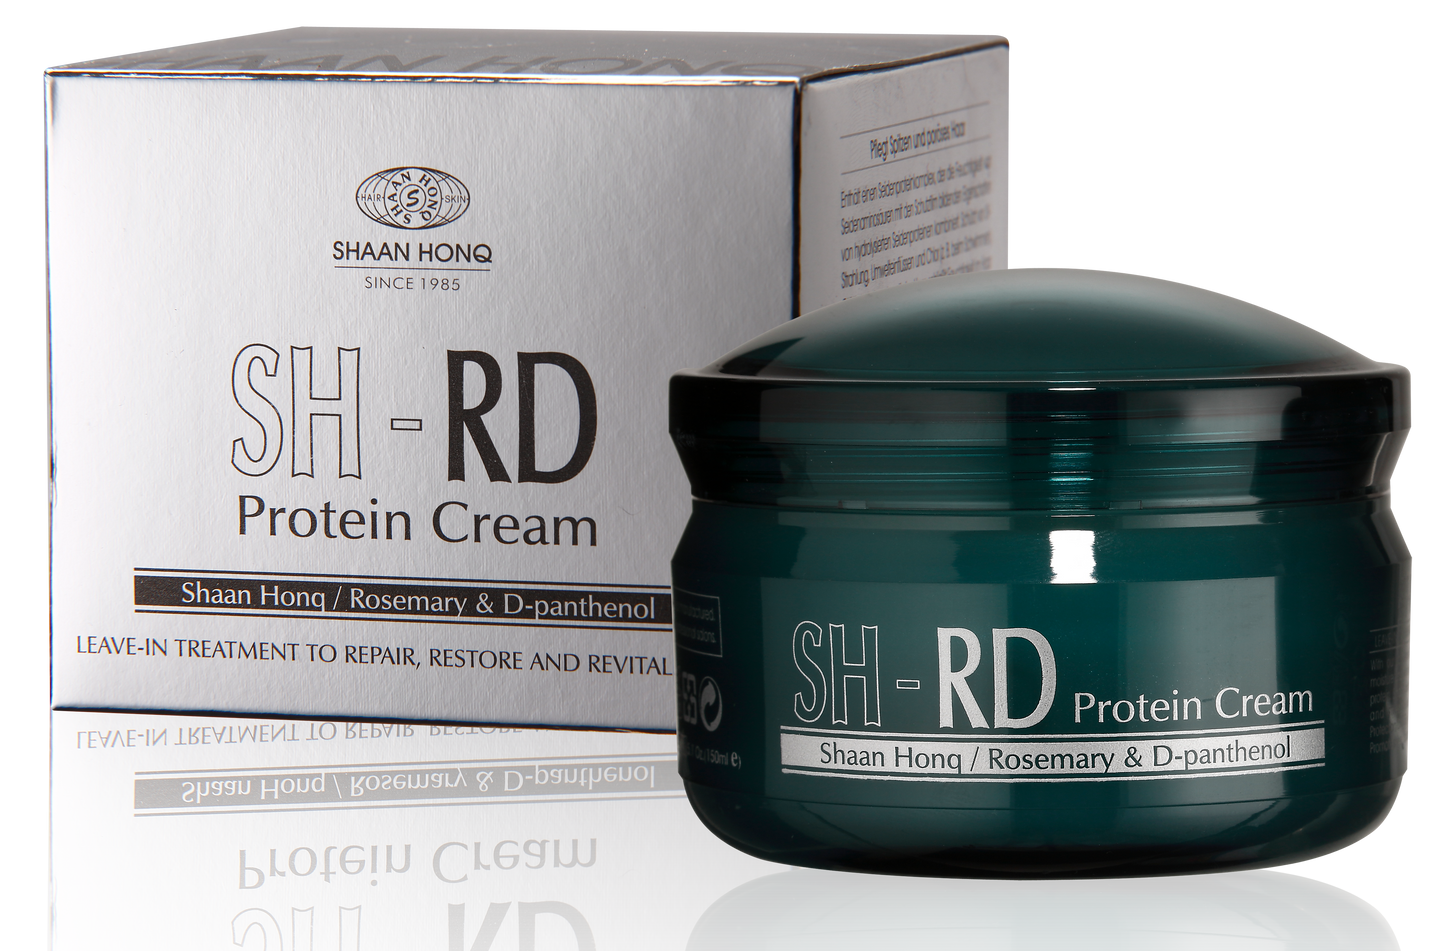 SH-RD Protein Cream (2.71oz/80ml)